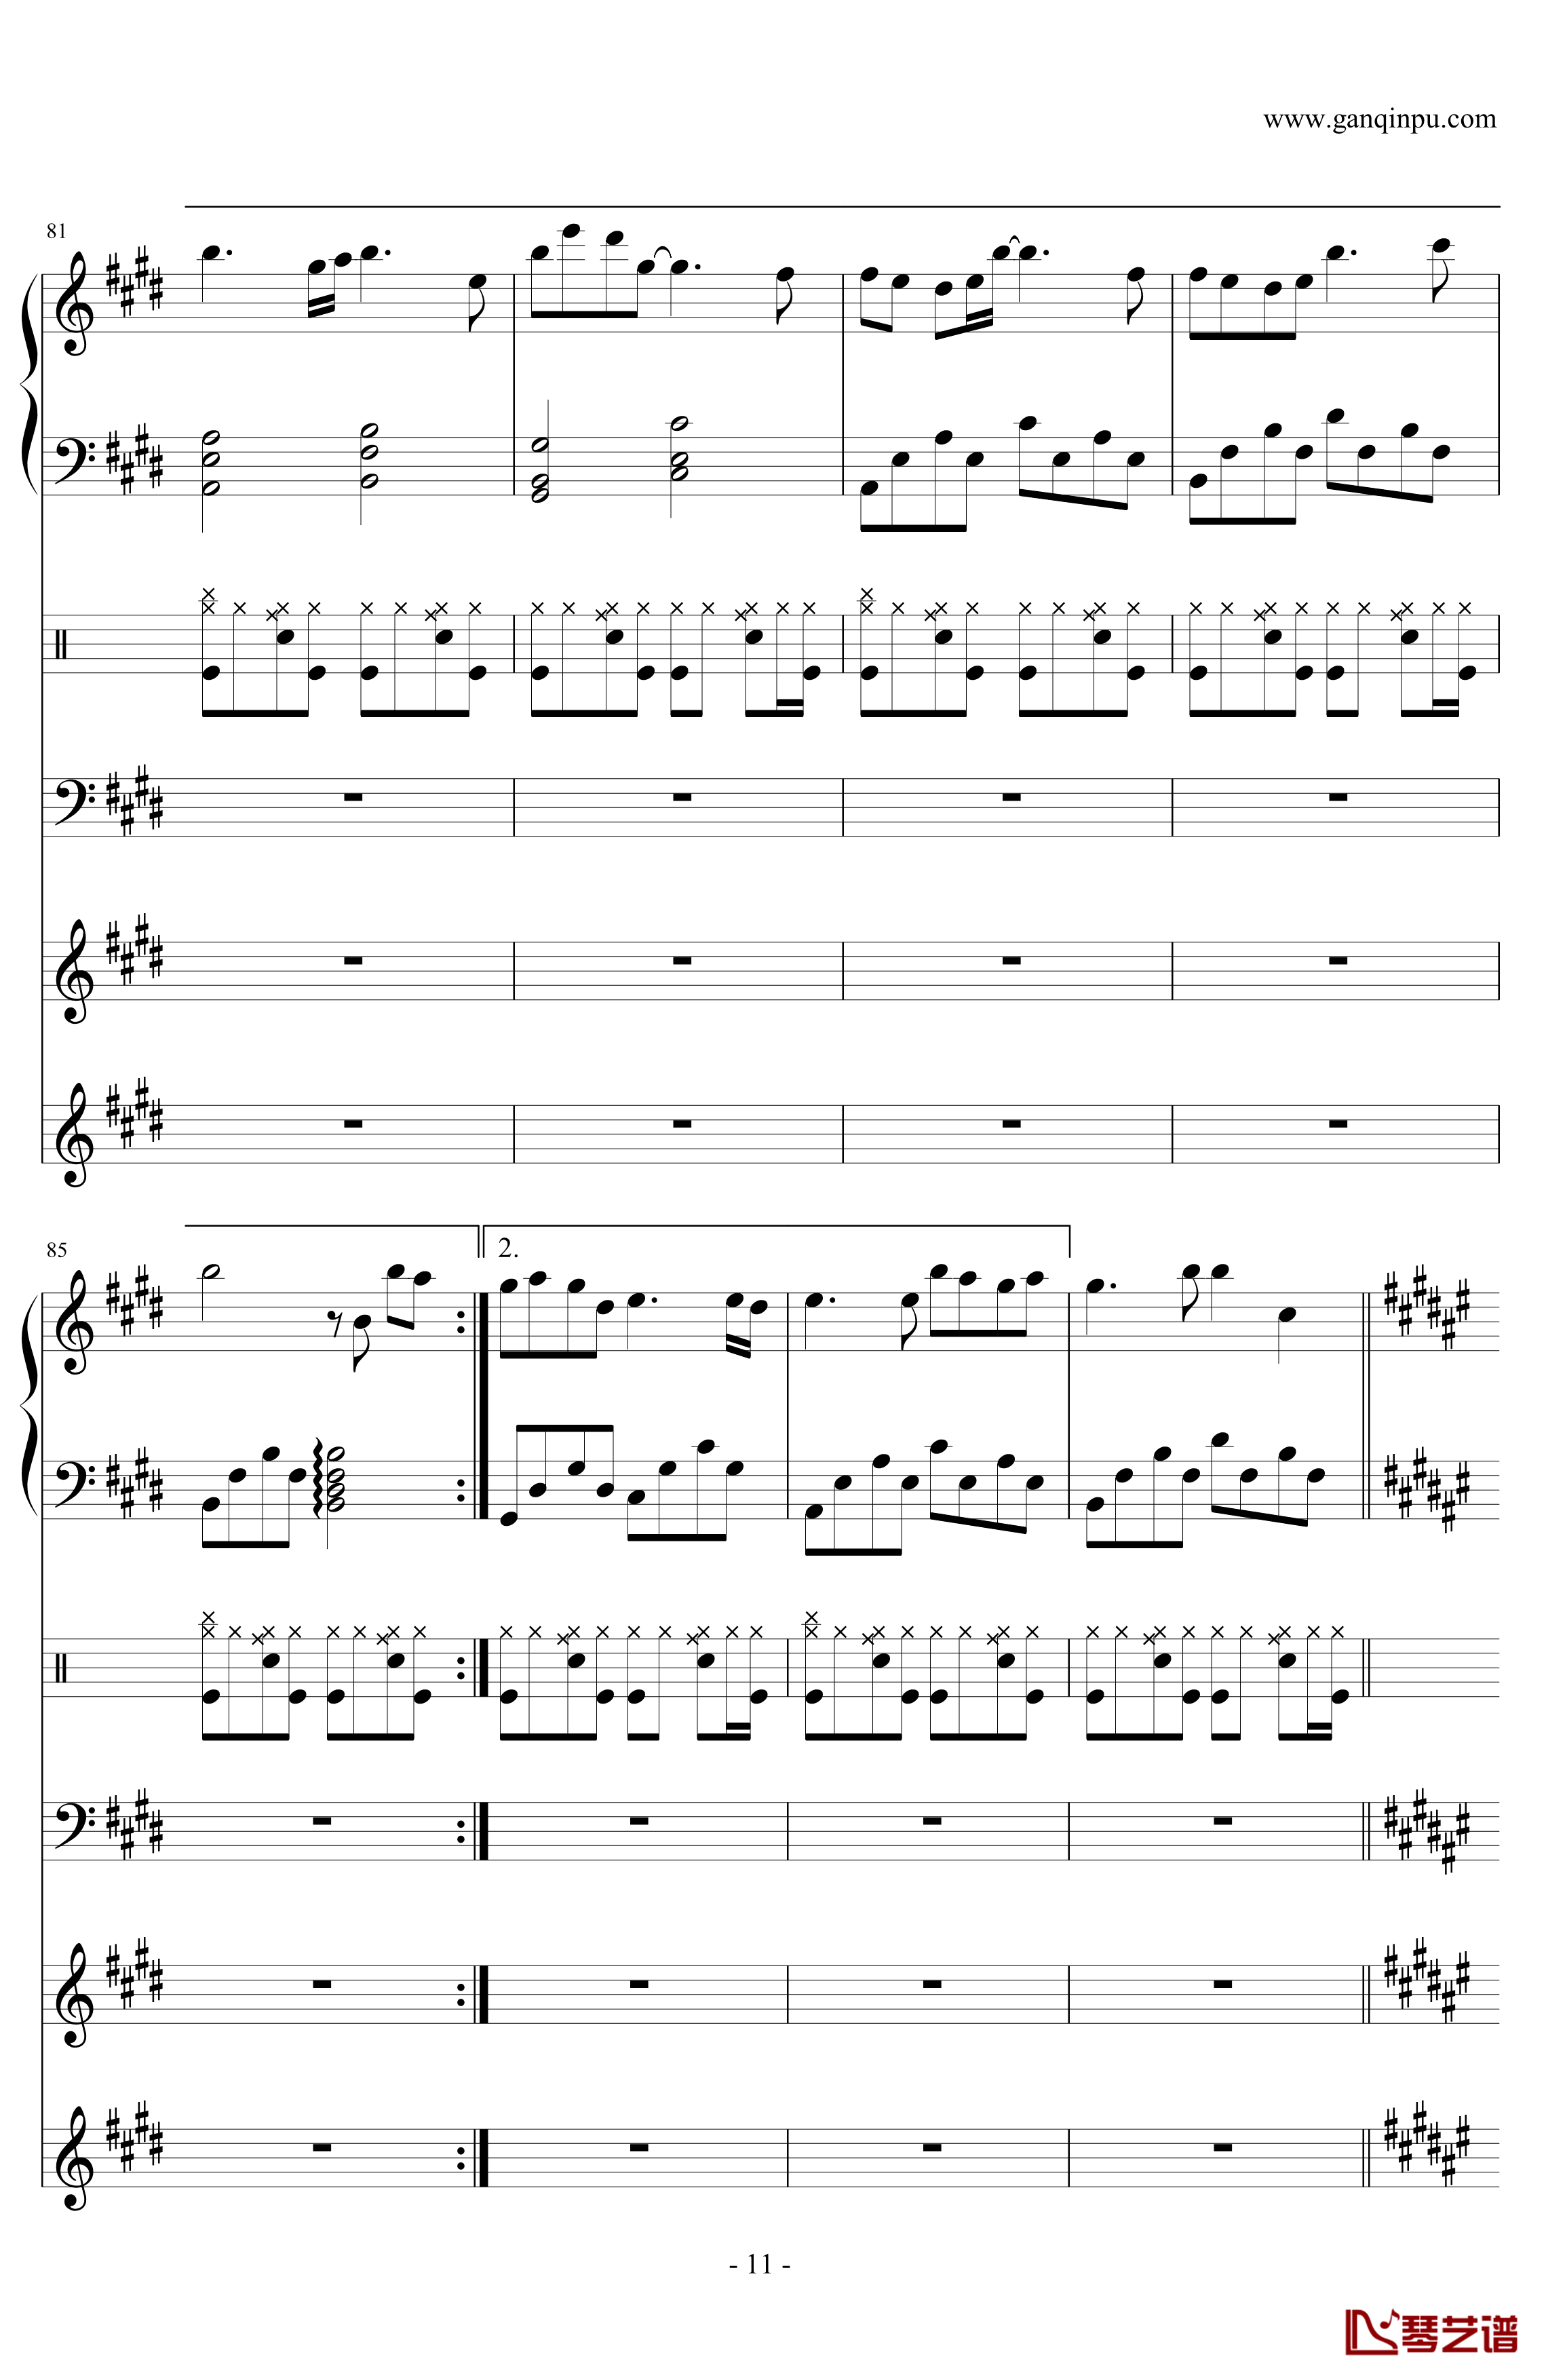 虽然歌声无形-歌に形はないけれど-初音ミク五线谱预览2-钢琴谱文件（五线谱、双手简谱、数字谱、Midi、PDF）免费下载